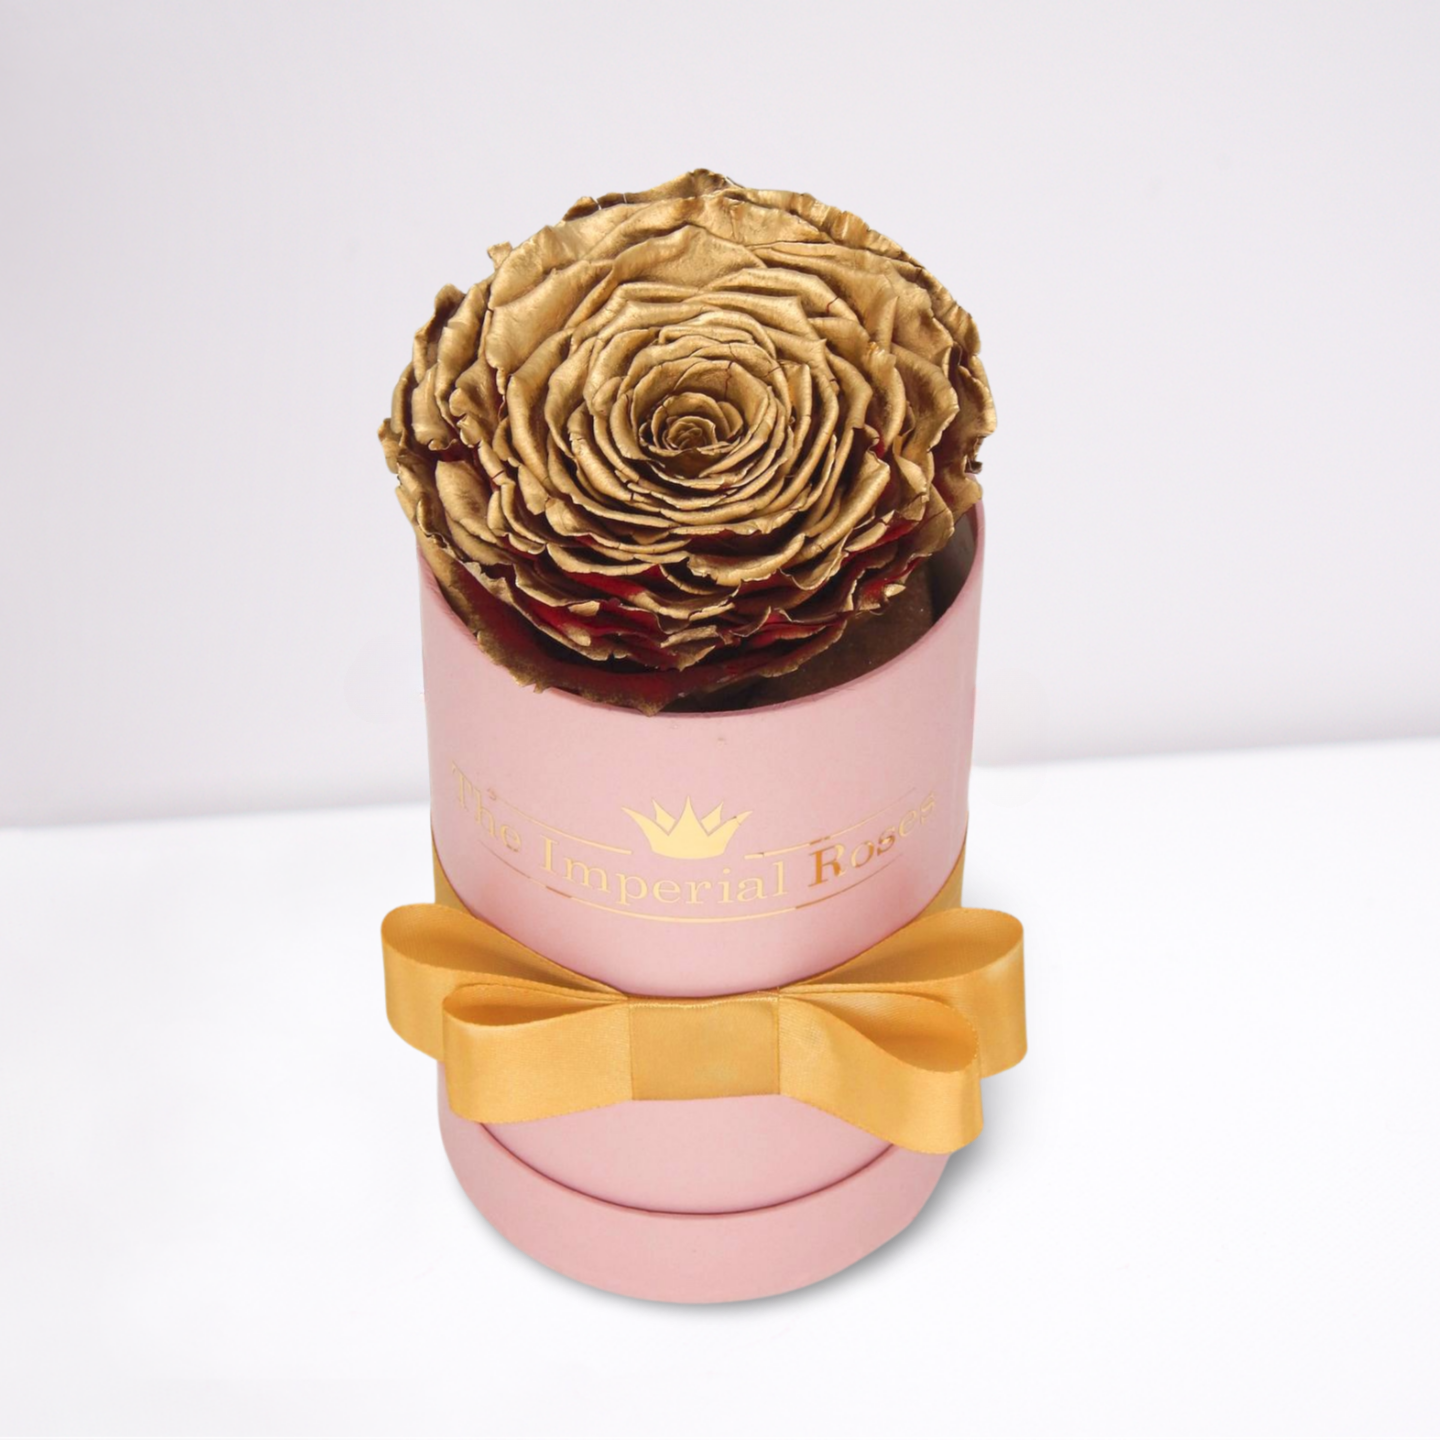 trvacna single ruza v boxe zlatej farby so zlatou satenovou stuhou a nalepeným logom the imperial roses